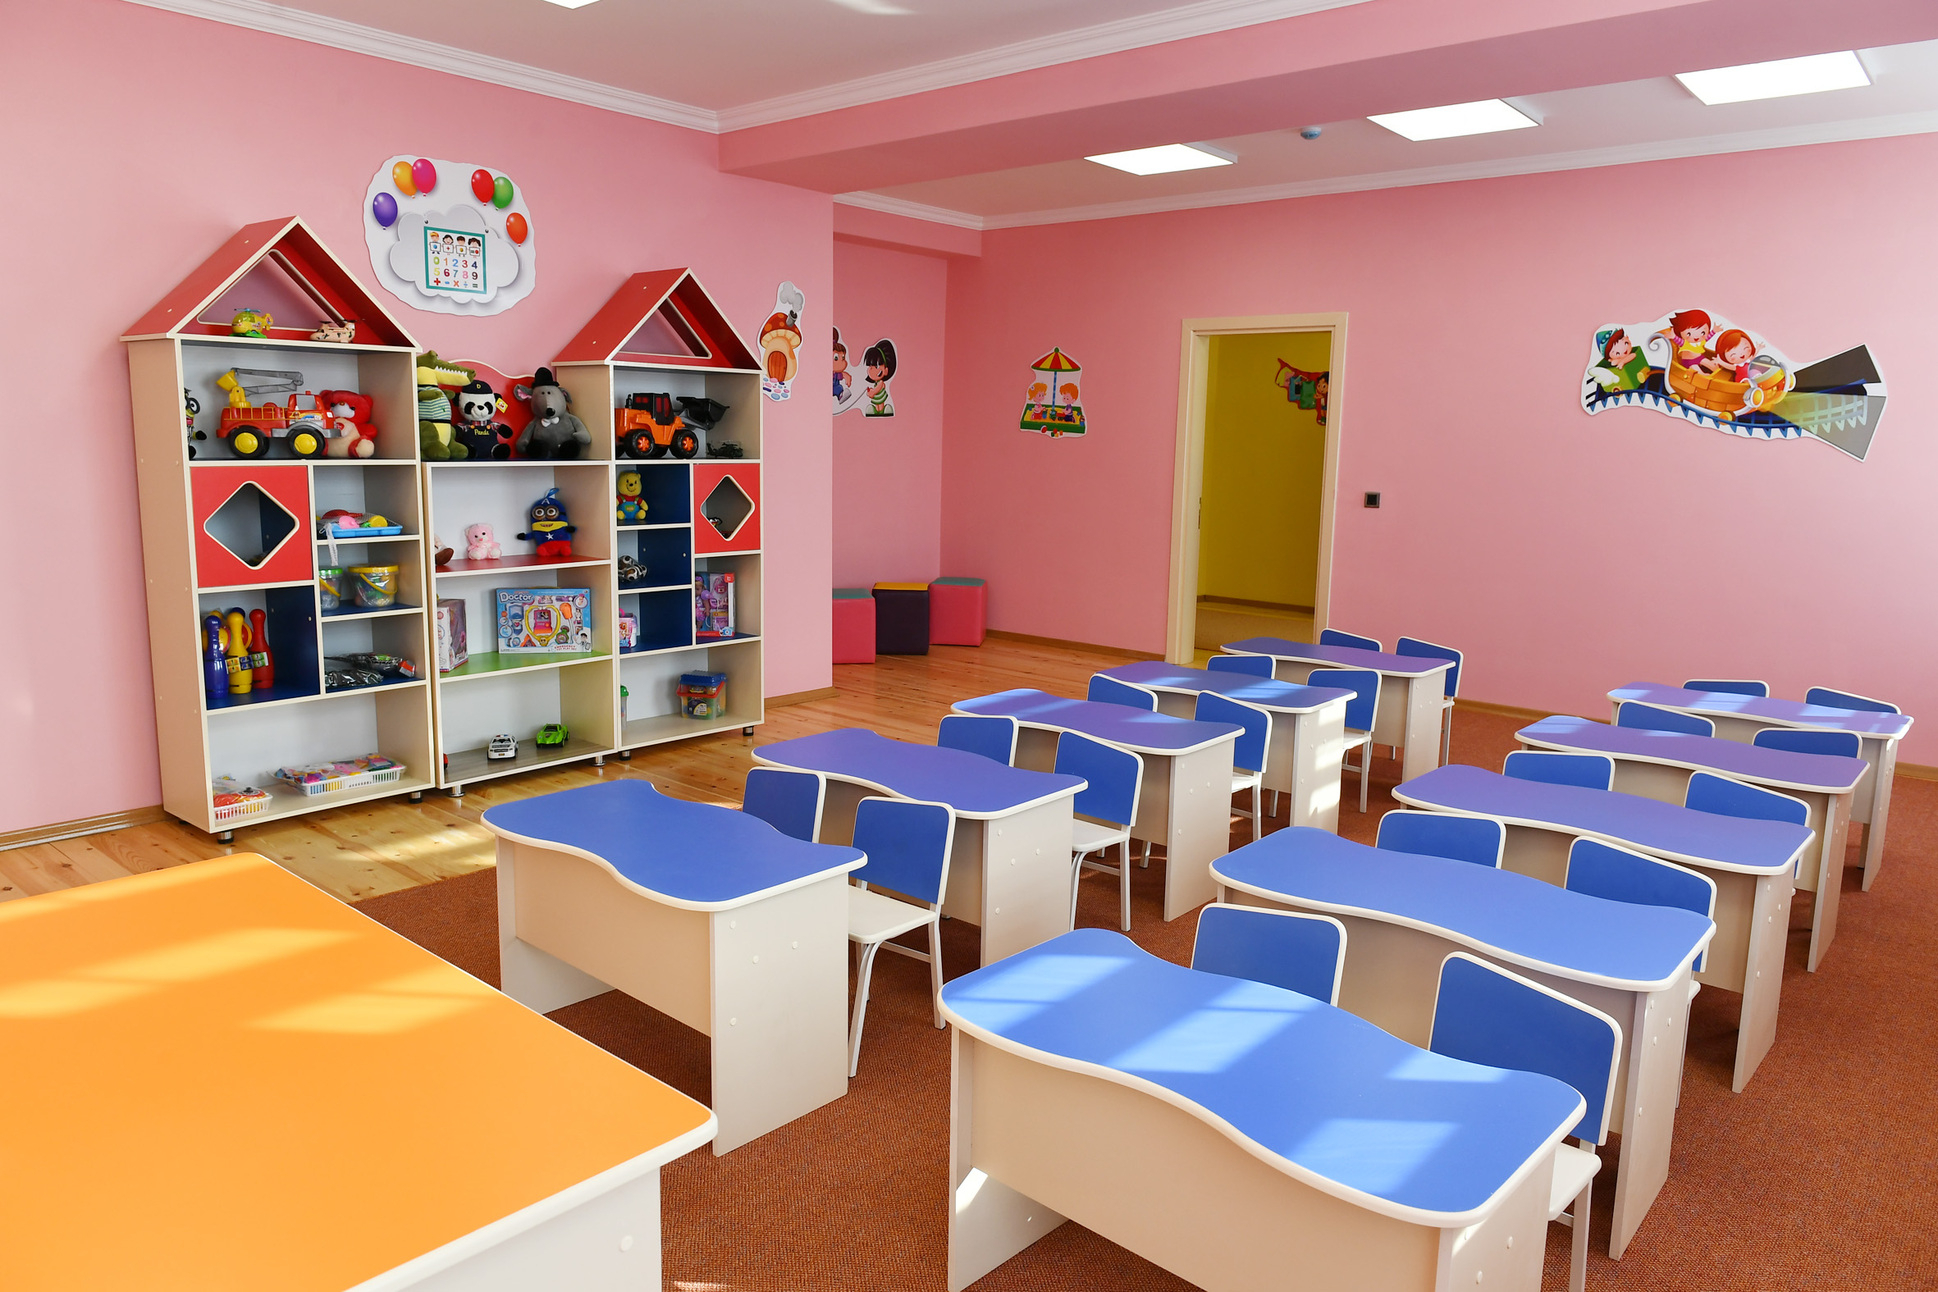 Министерство: Вакантны 160 мест заведующих детскими садами